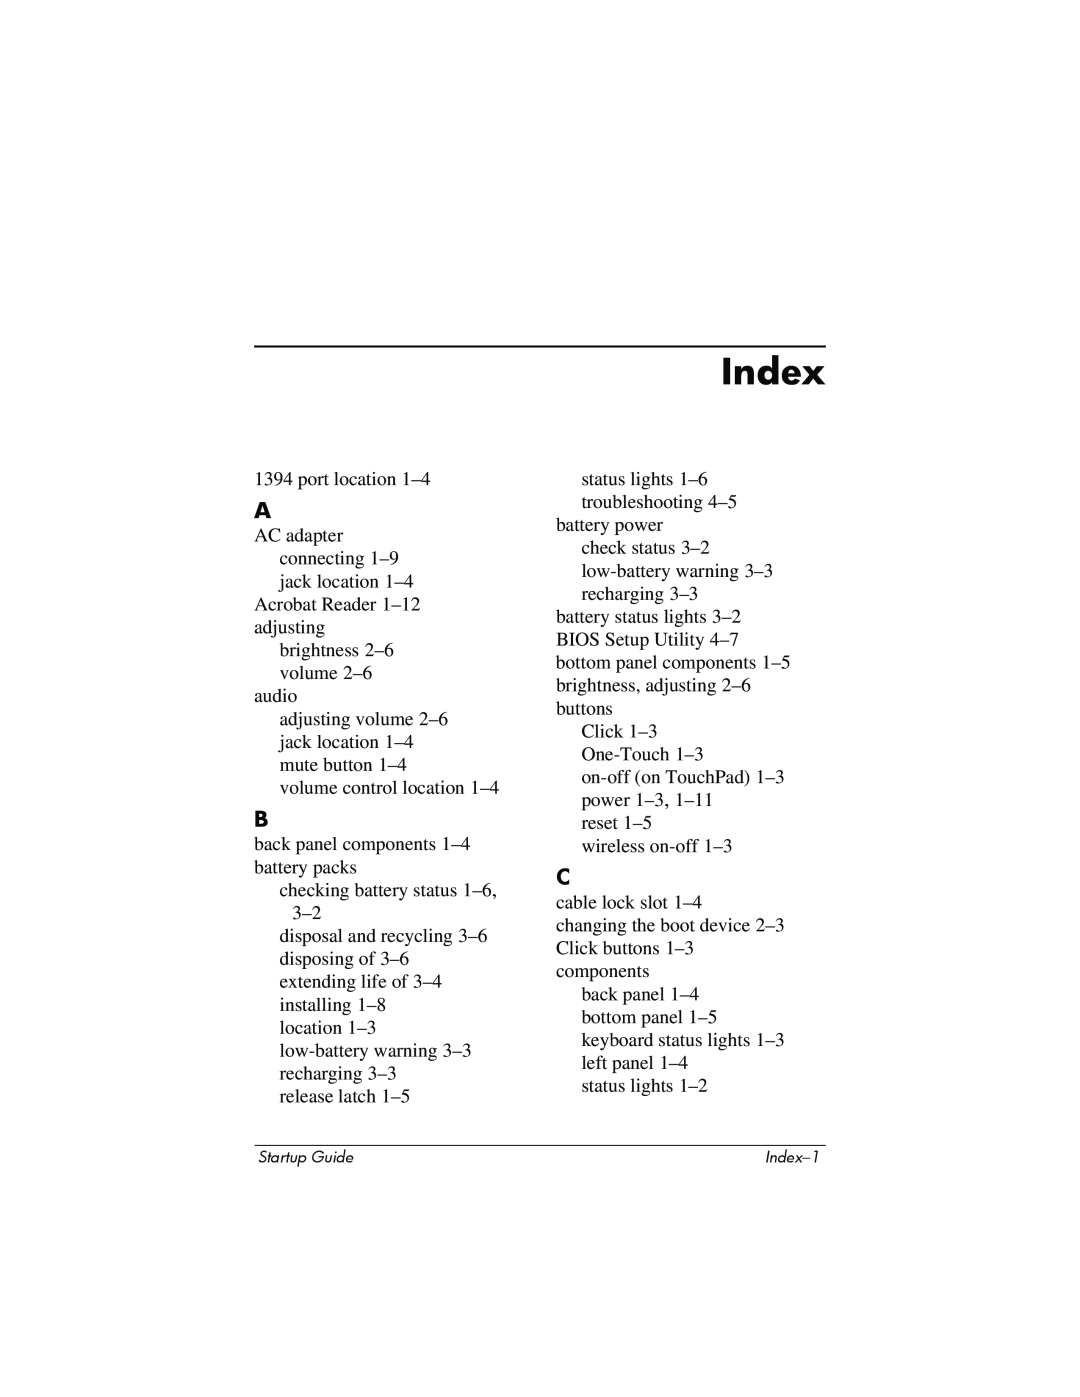 Compaq Personal Computer manual Index 